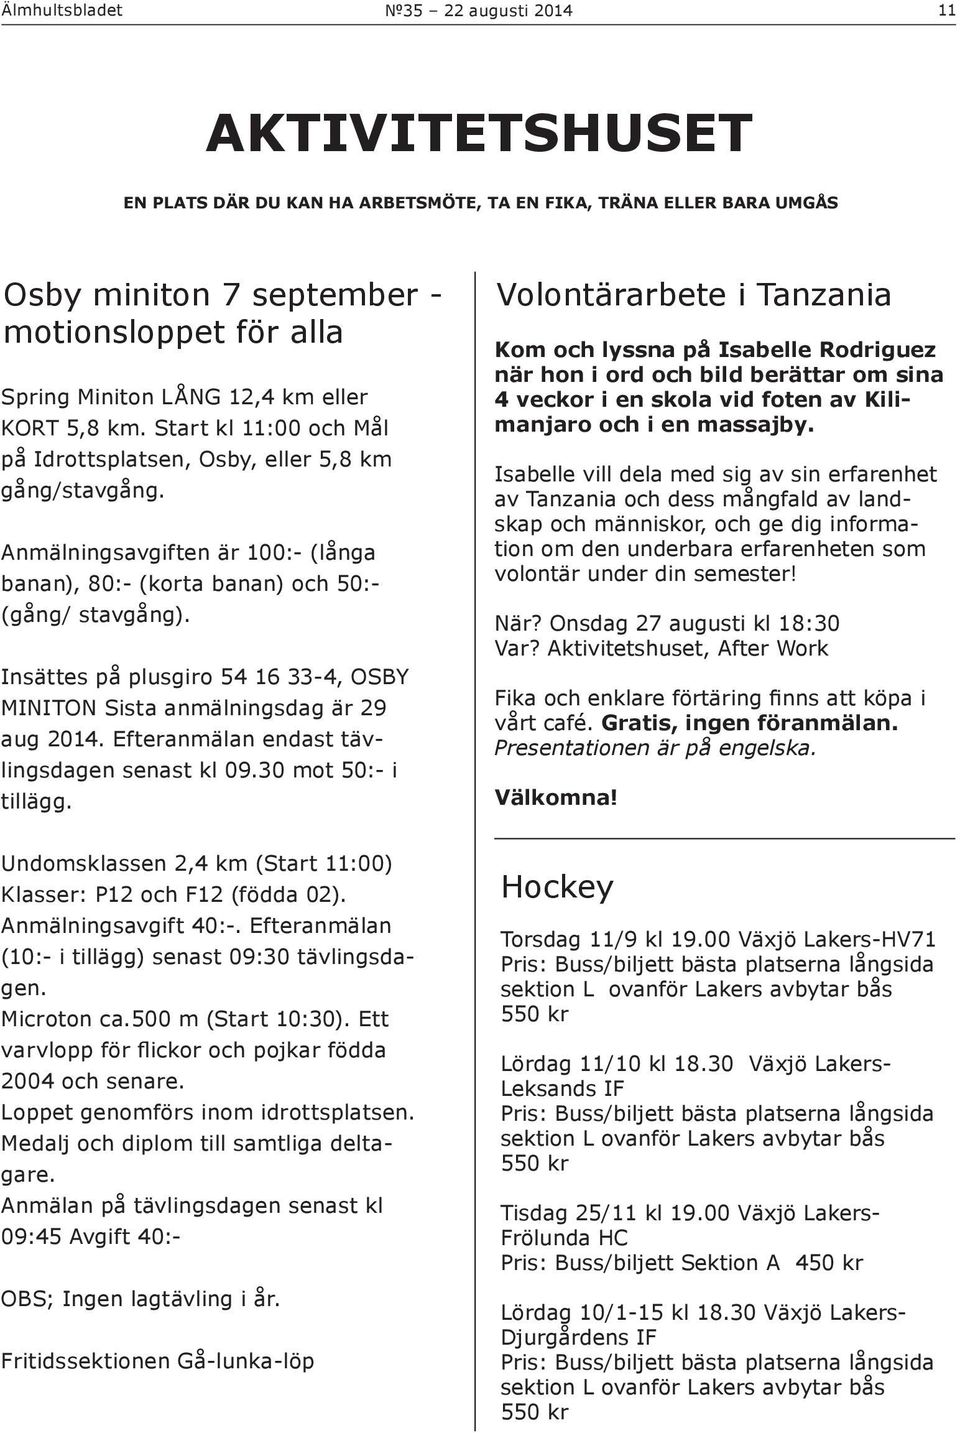 Insättes på plusgiro 54 16 33-4, OSBY MINITON Sista anmälningsdag är 29 aug 2014. Efteranmälan endast tävlingsdagen senast kl 09.30 mot 50:- i tillägg.